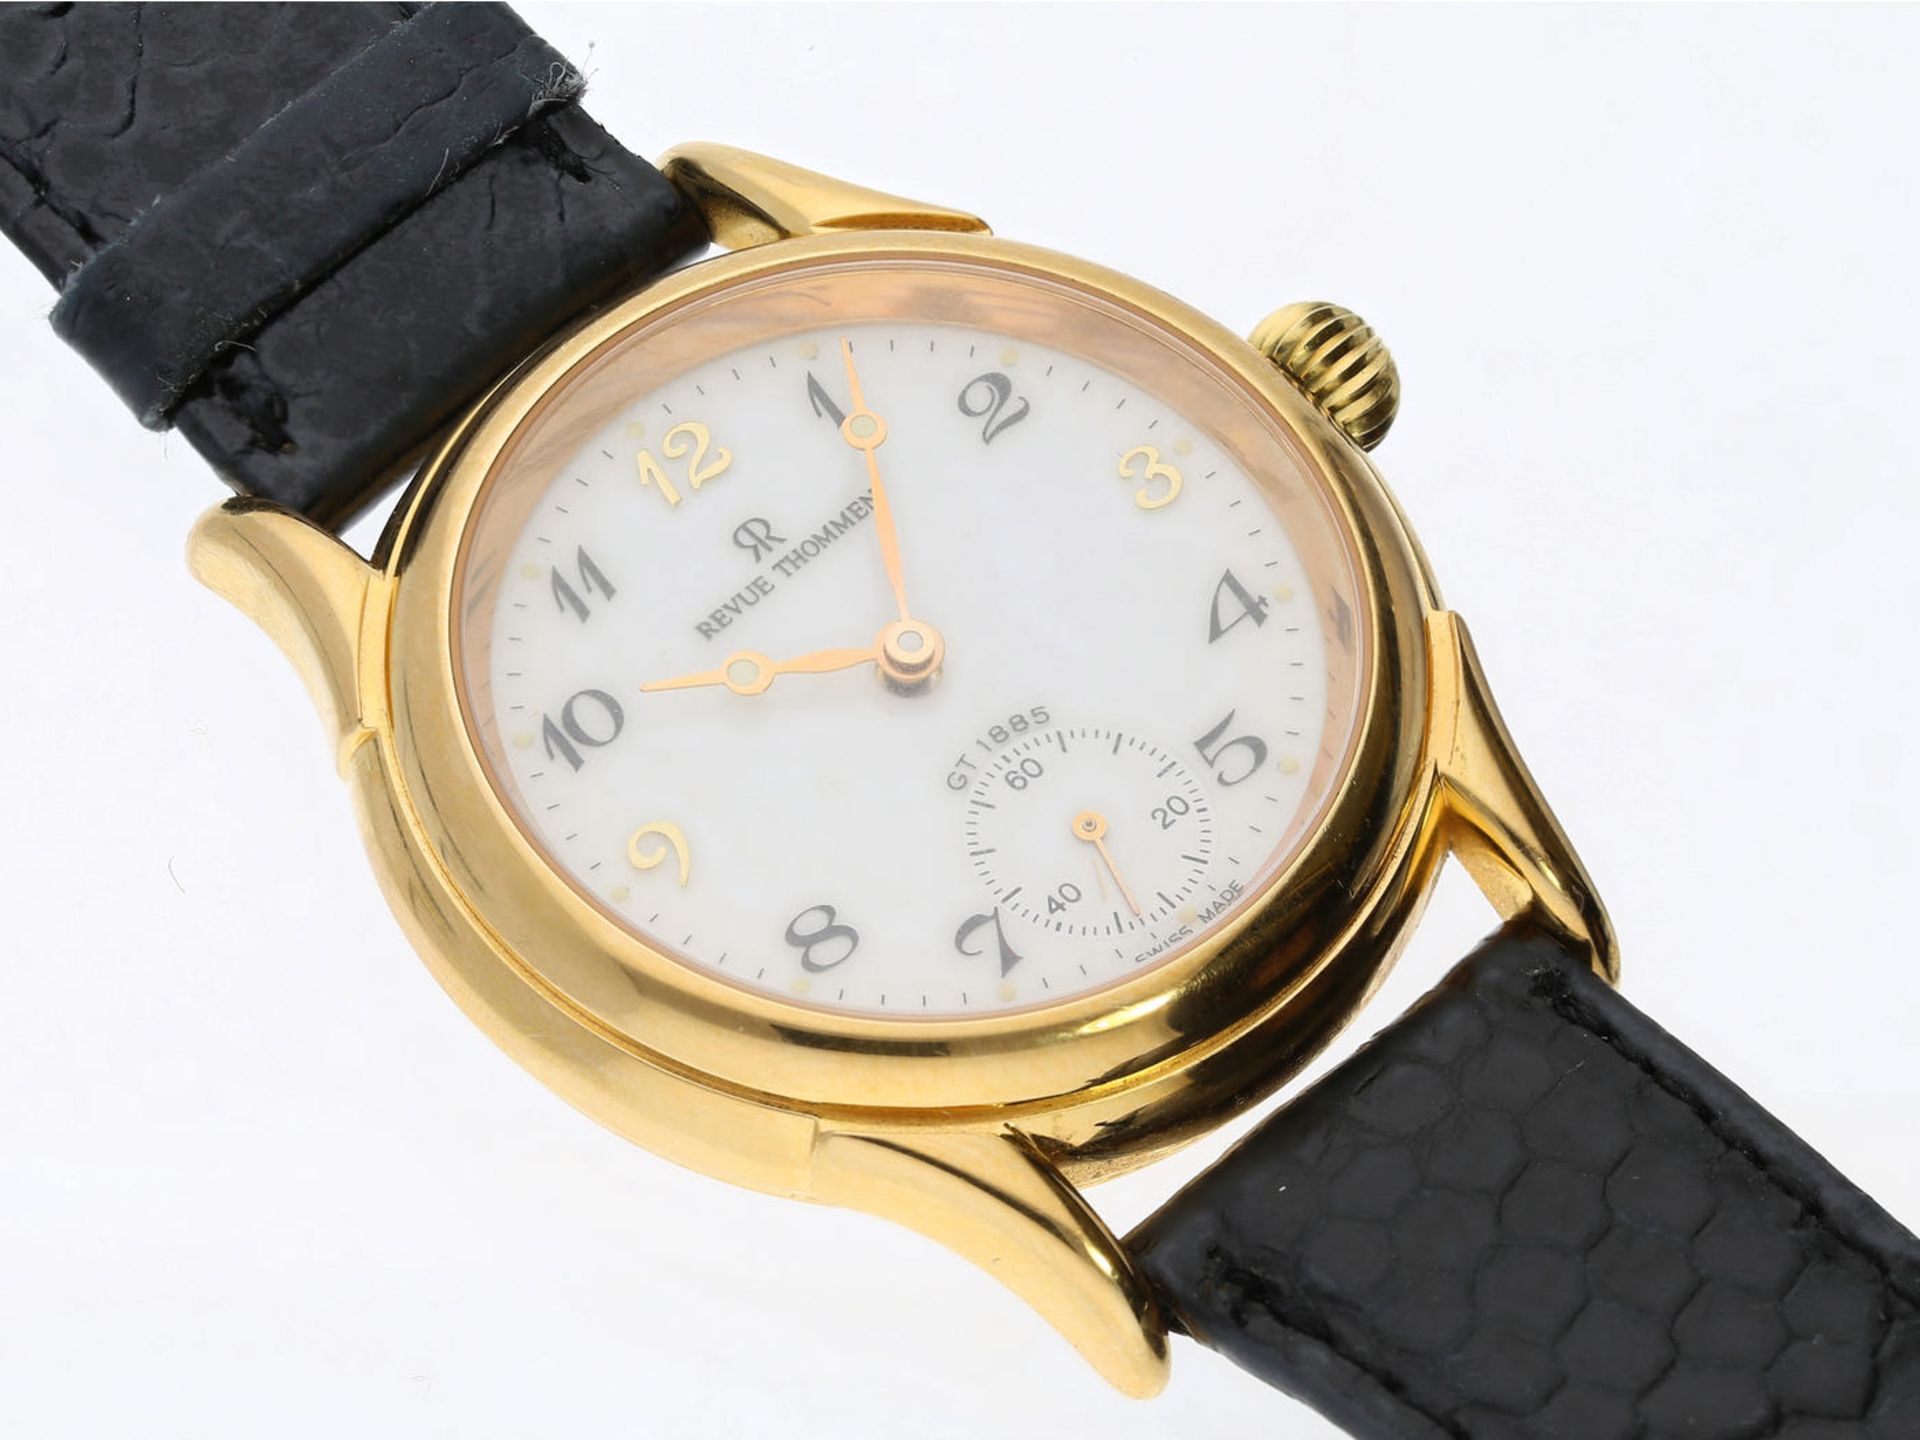 Armbanduhr: Schweizer Herrenuhr der Marke Revue Thommen "Classical" Handaufzug GT1885, um 2000 Ca. - Bild 2 aus 3